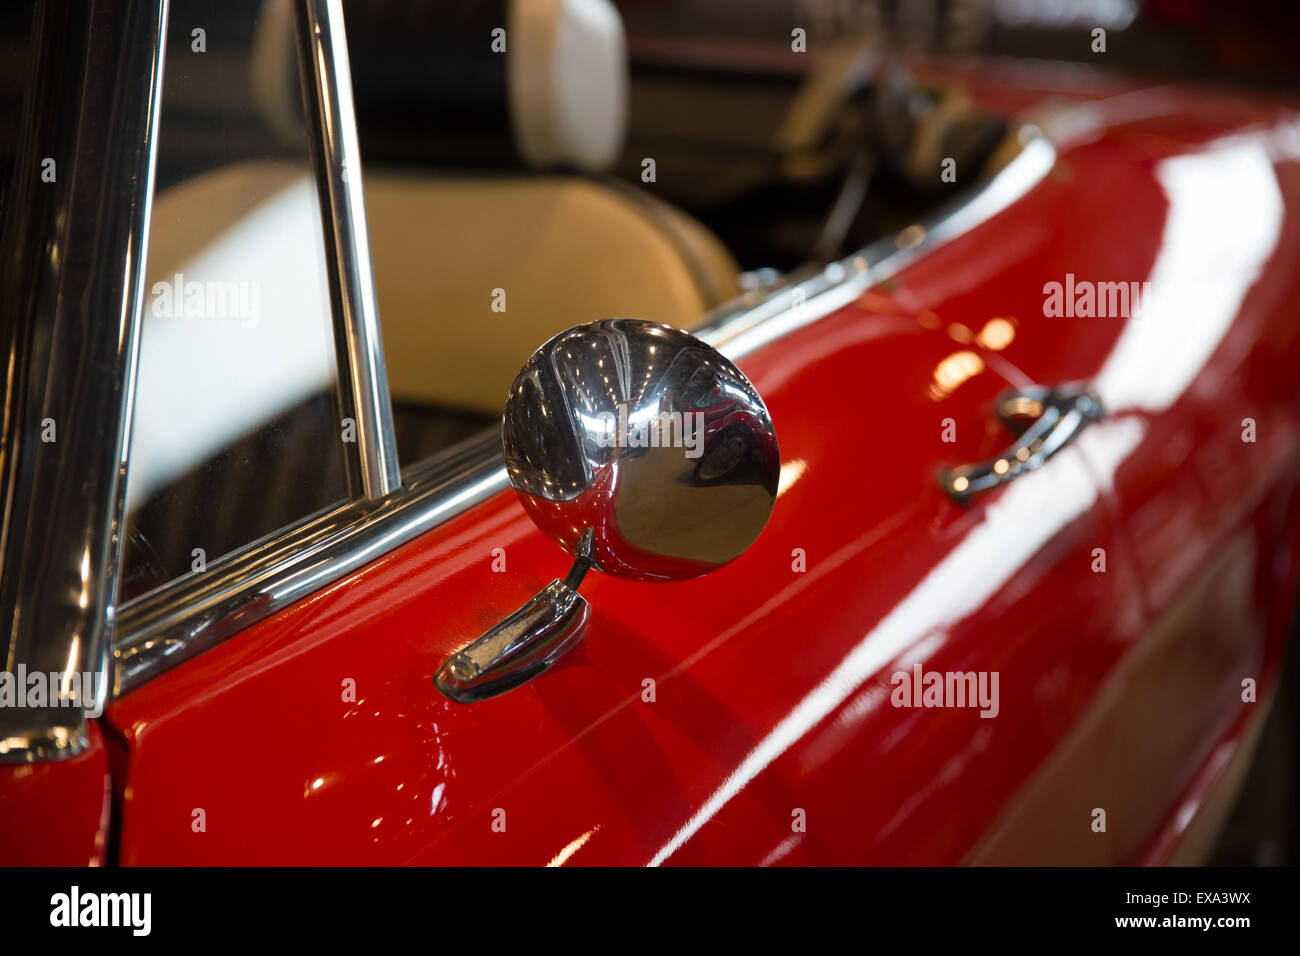 Ein Paar Fuzzy Dice, das aus dem Rückspiegel eines antiken Autos aufgehängt  wird Stockfotografie - Alamy